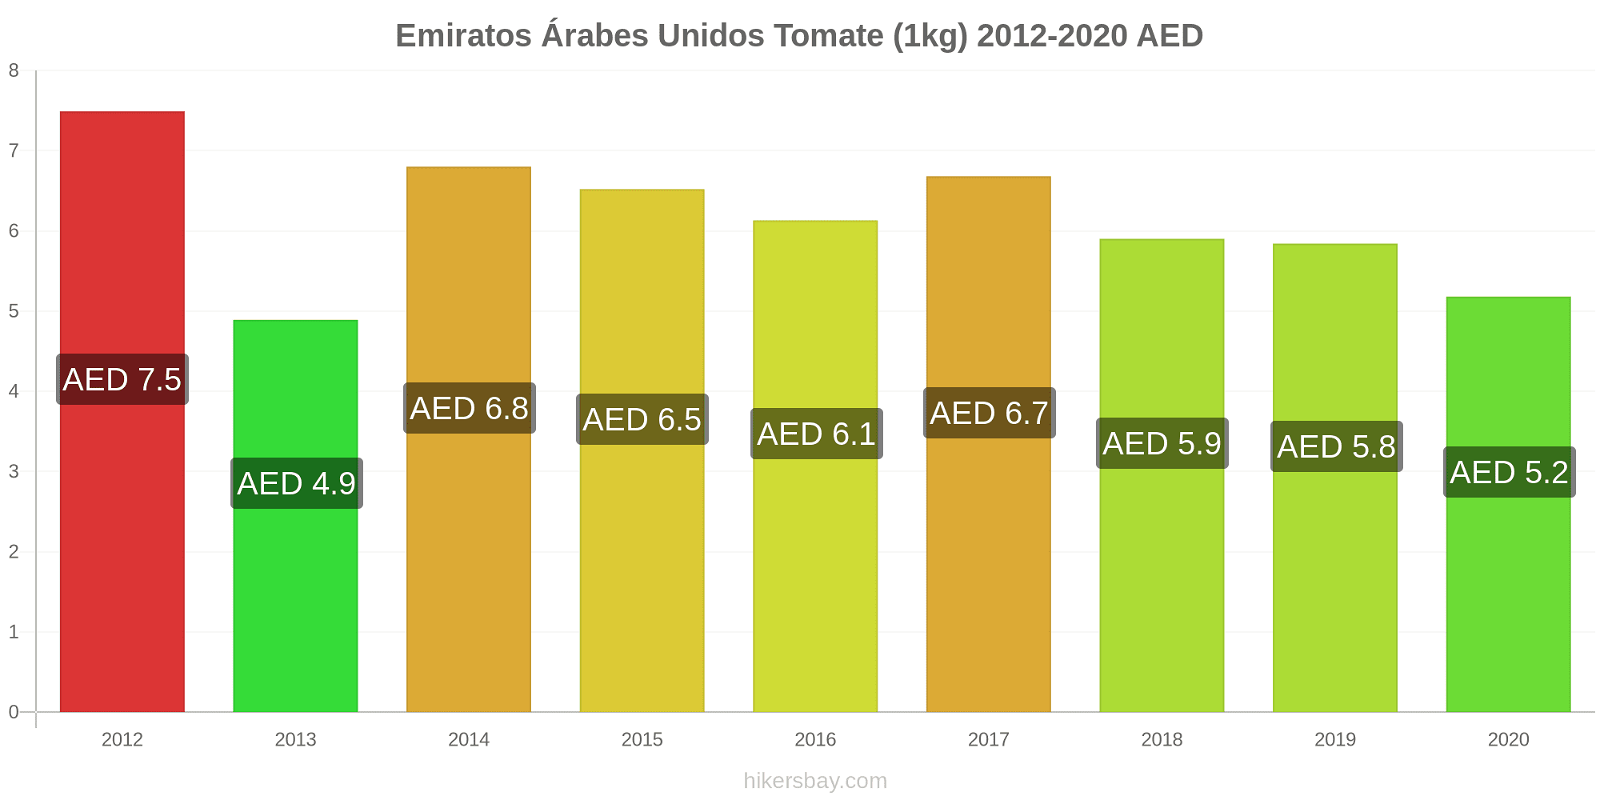 Emiratos Árabes Unidos cambios de precios Tomate (1kg) hikersbay.com